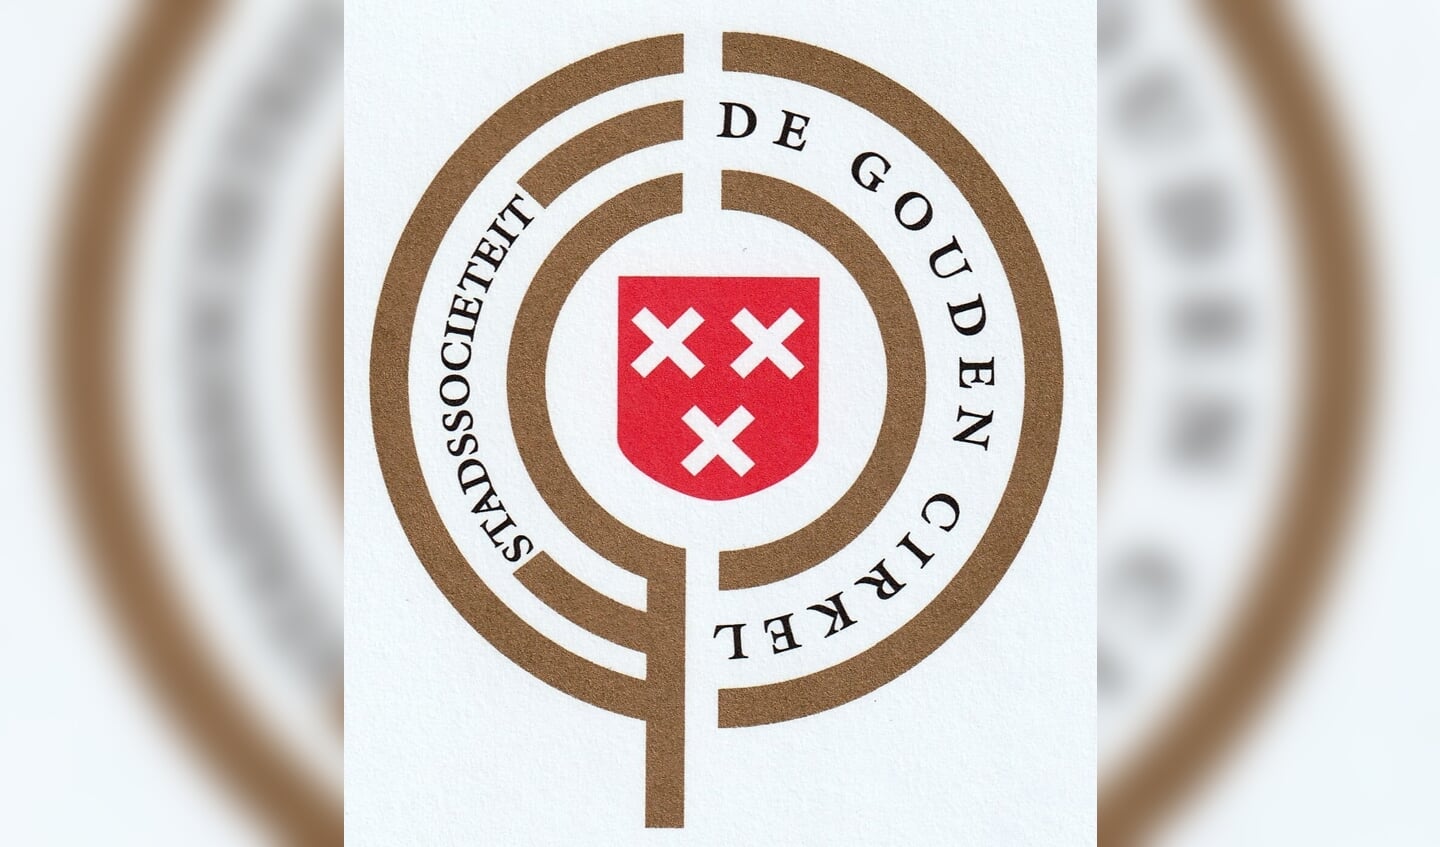 Het logo van De Gouden Cirkel